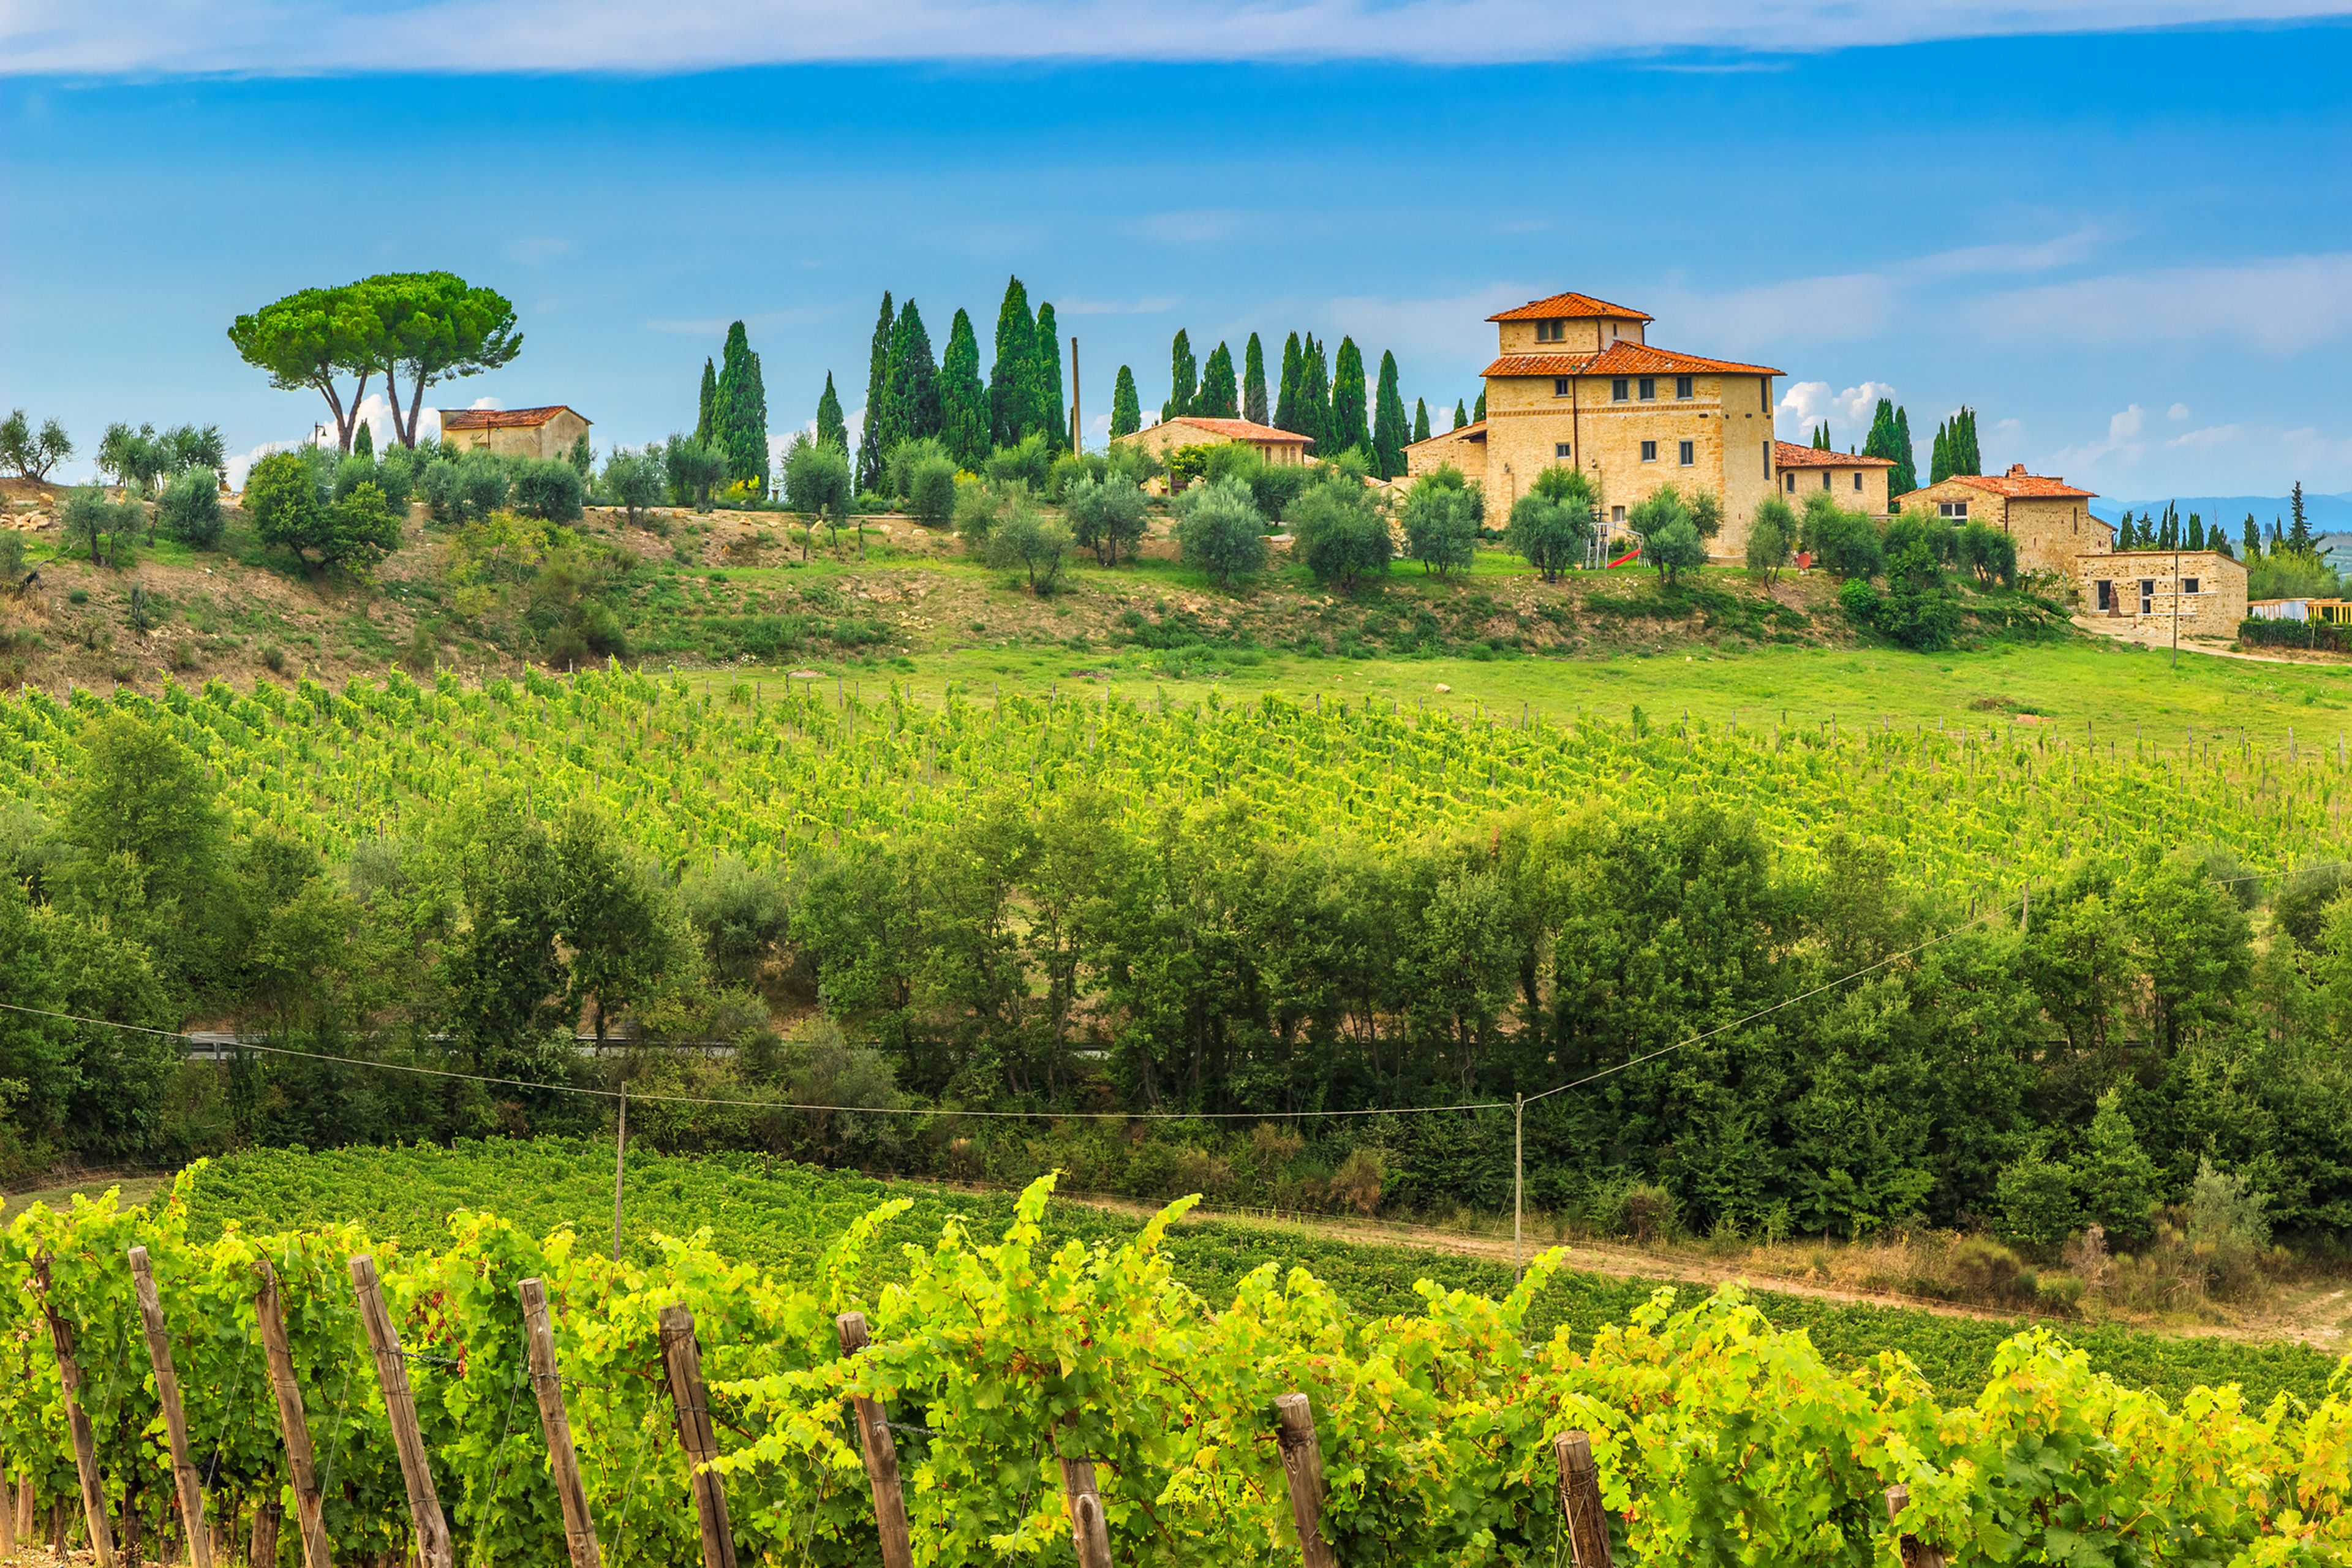 Imagen de los viñeros de Chianti en la Toscana.